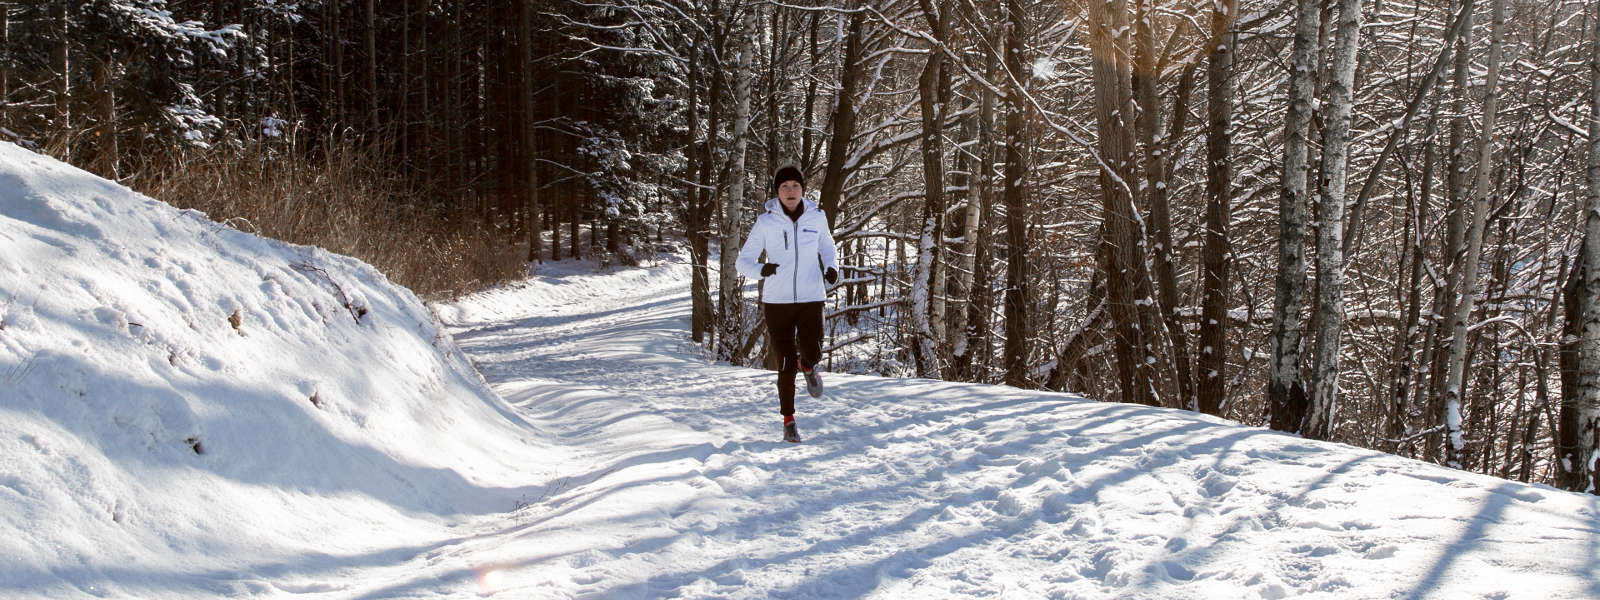 Vrouw in een wit hardloopjasje joggt op een met sneeuw bedekt pad tussen bomen en kijkt naar de camera